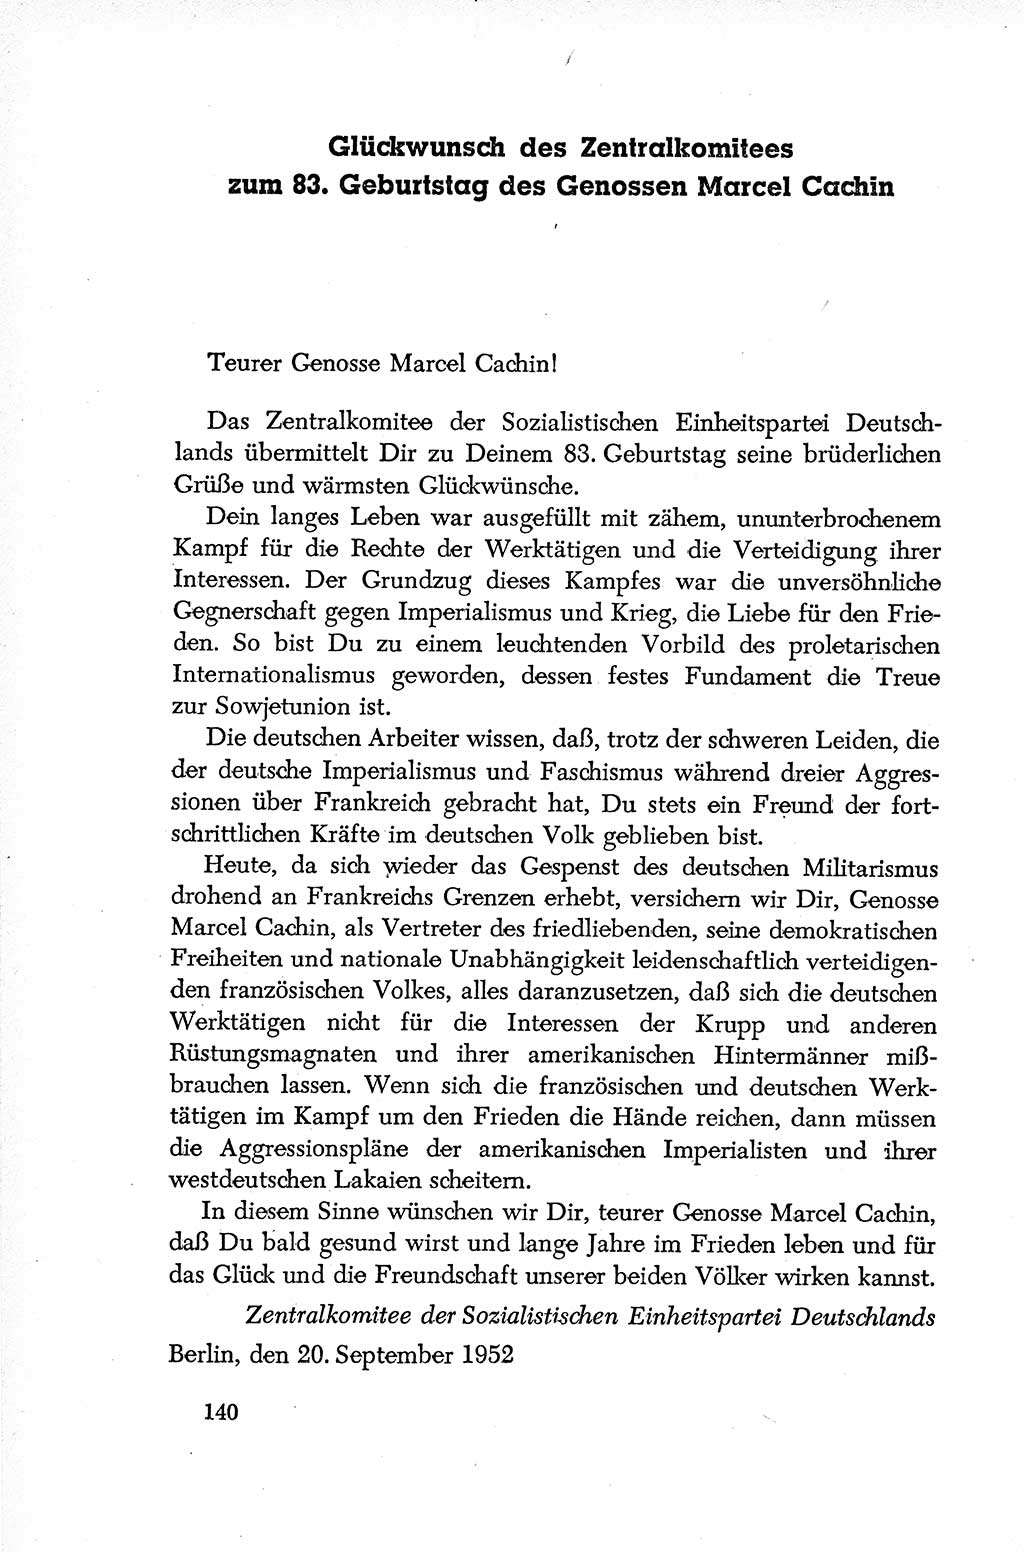 Dokumente der Sozialistischen Einheitspartei Deutschlands (SED) [Deutsche Demokratische Republik (DDR)] 1952-1953, Seite 140 (Dok. SED DDR 1952-1953, S. 140)